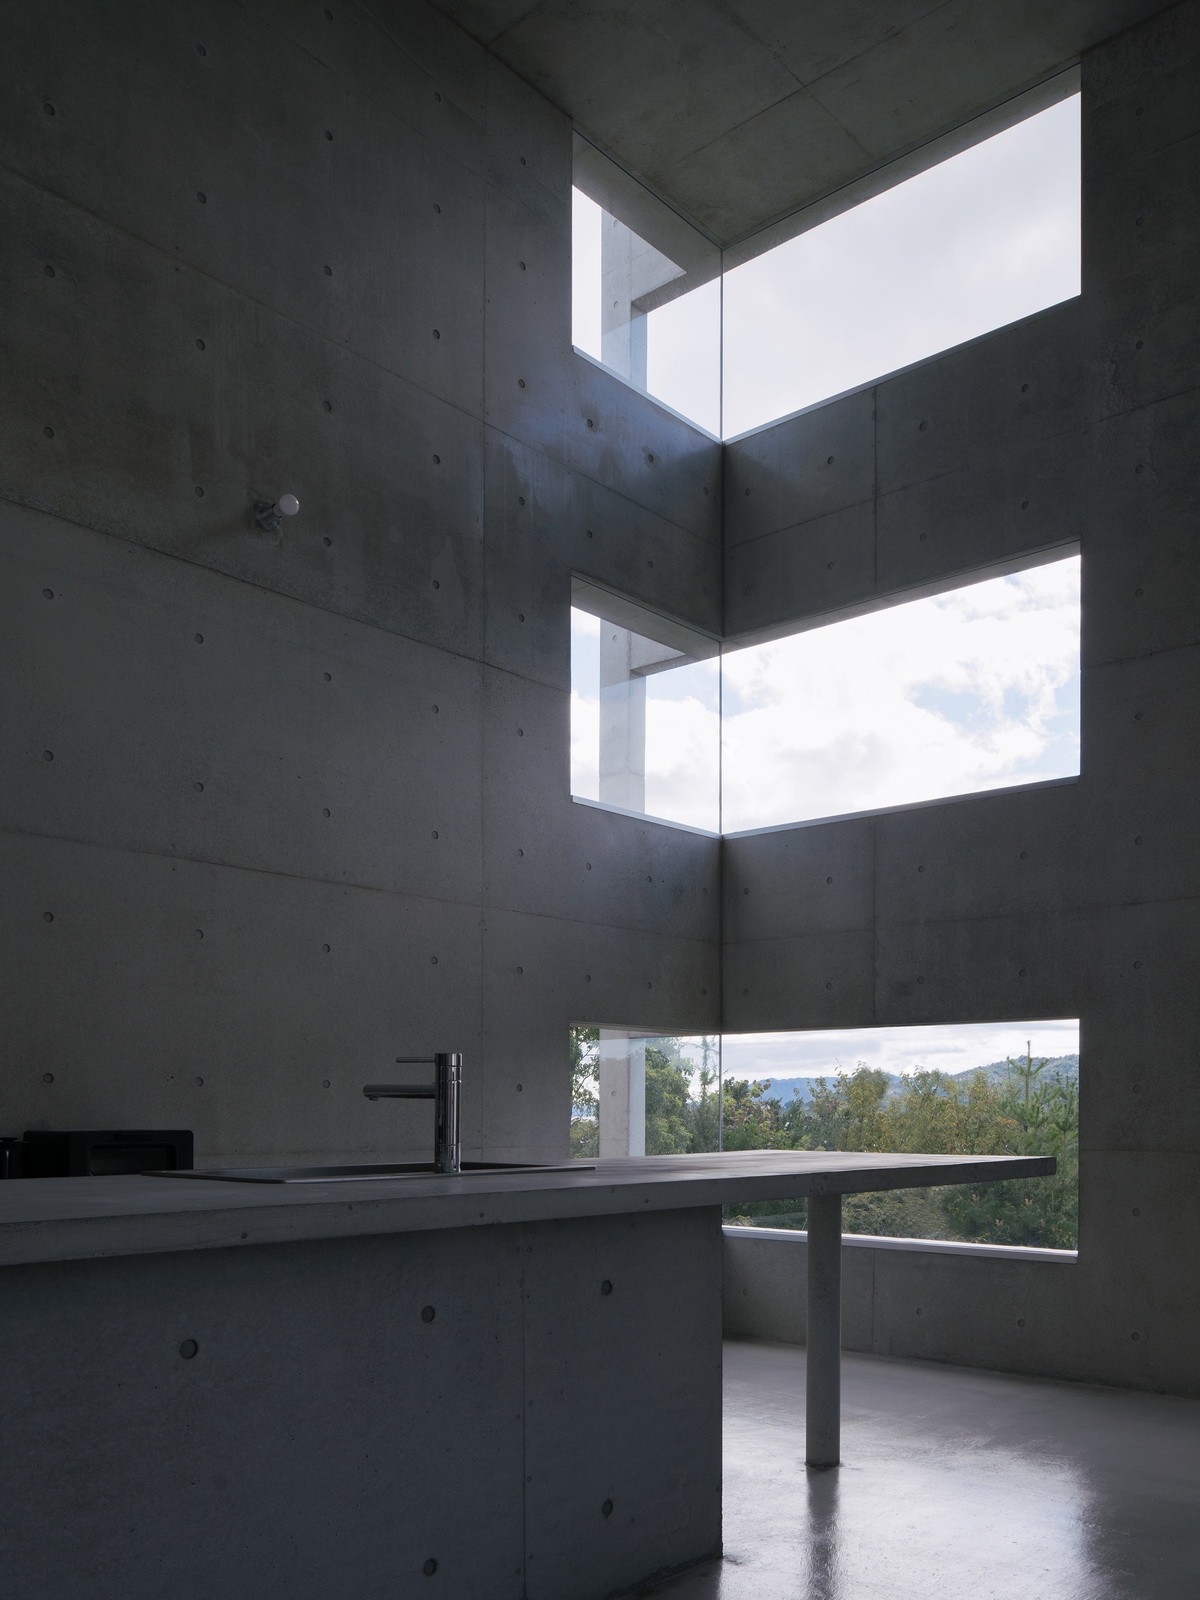 日本Ajina独立住宅建筑设计 / Kazunori Fujimoto Architect & Associates